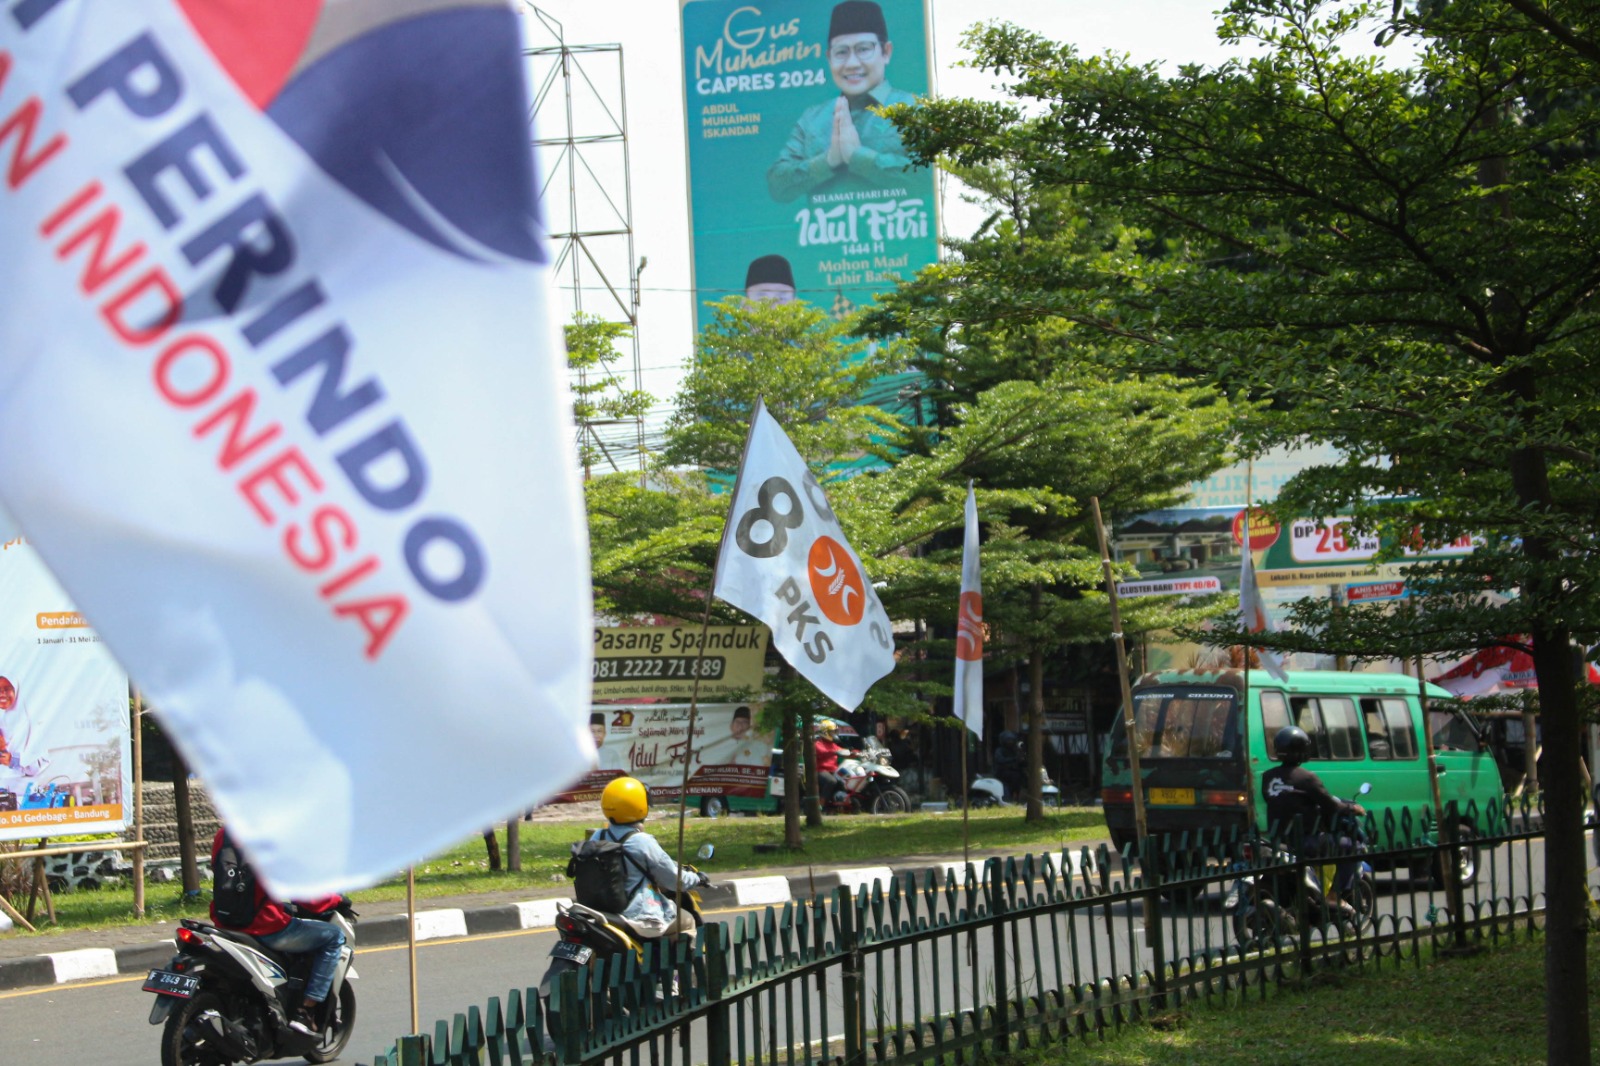 Perihal APS di Kota Bandung, PKS Mengaku Belum Pernah Menerima Instruksi dari Bawaslu